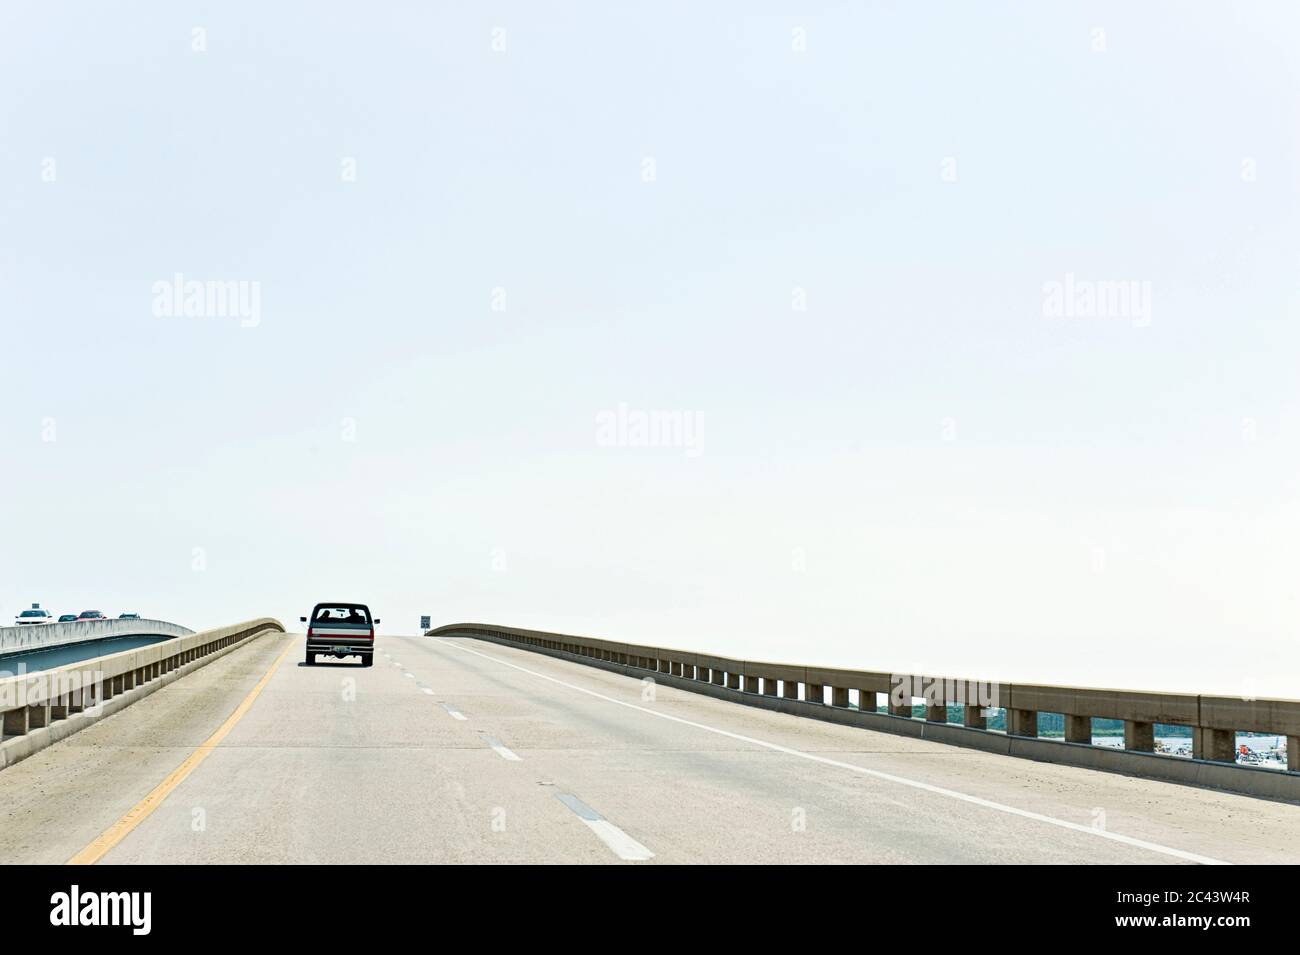 Car crosses a bridge, Destin, Florida, USA Stock Photo